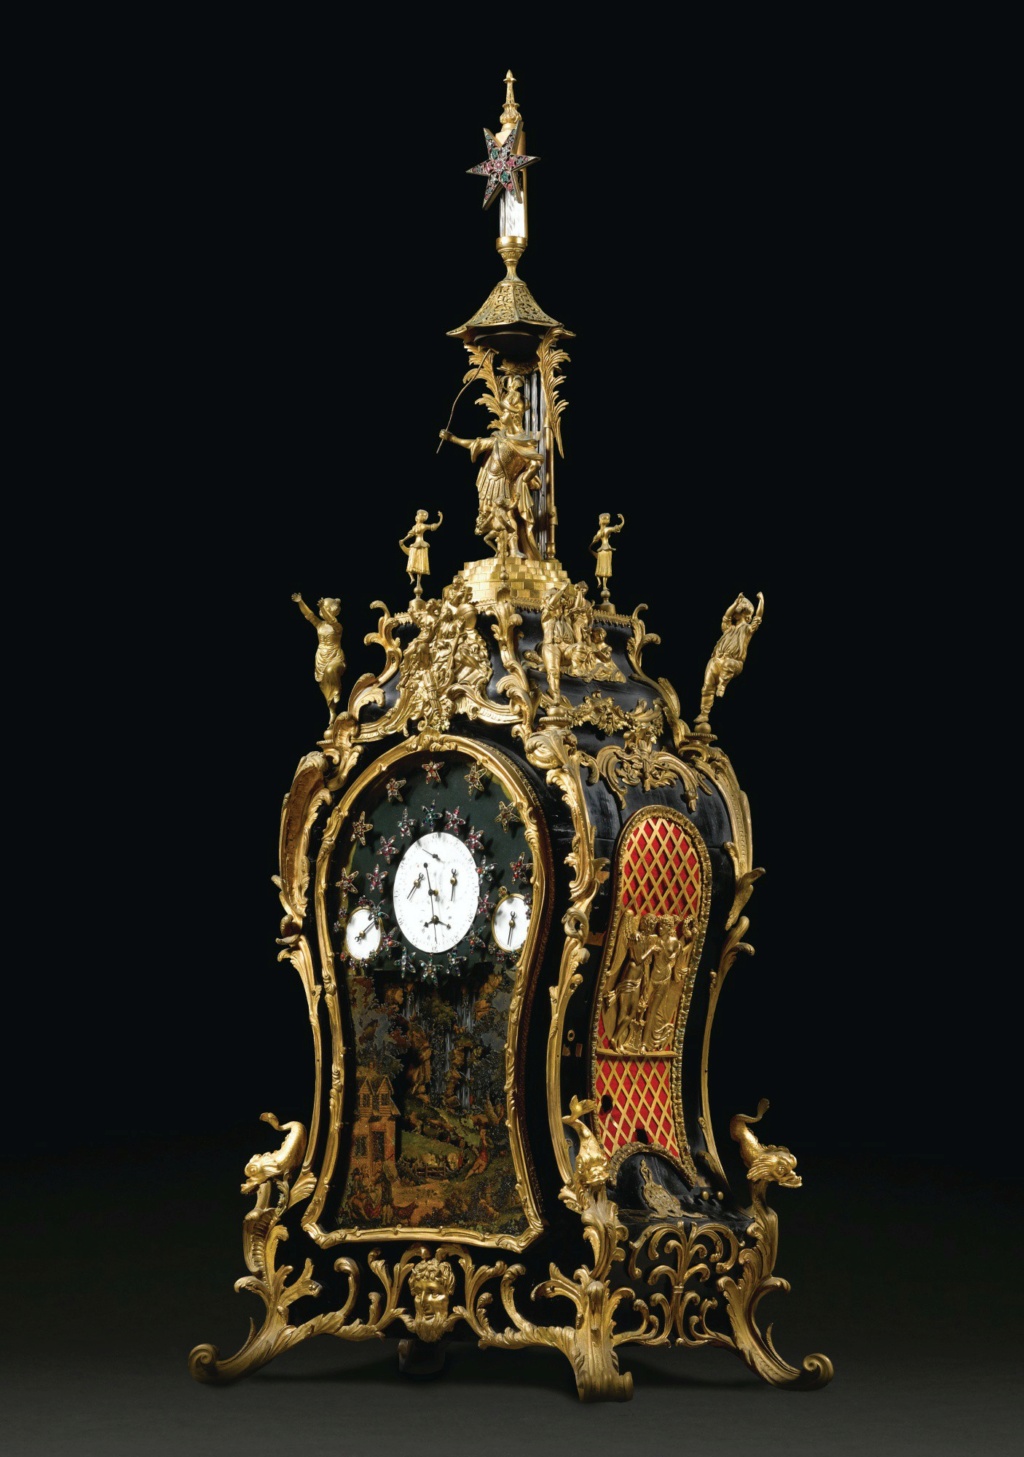 Horloges et pendules du XVIIIe siècle - Page 3 L2030310